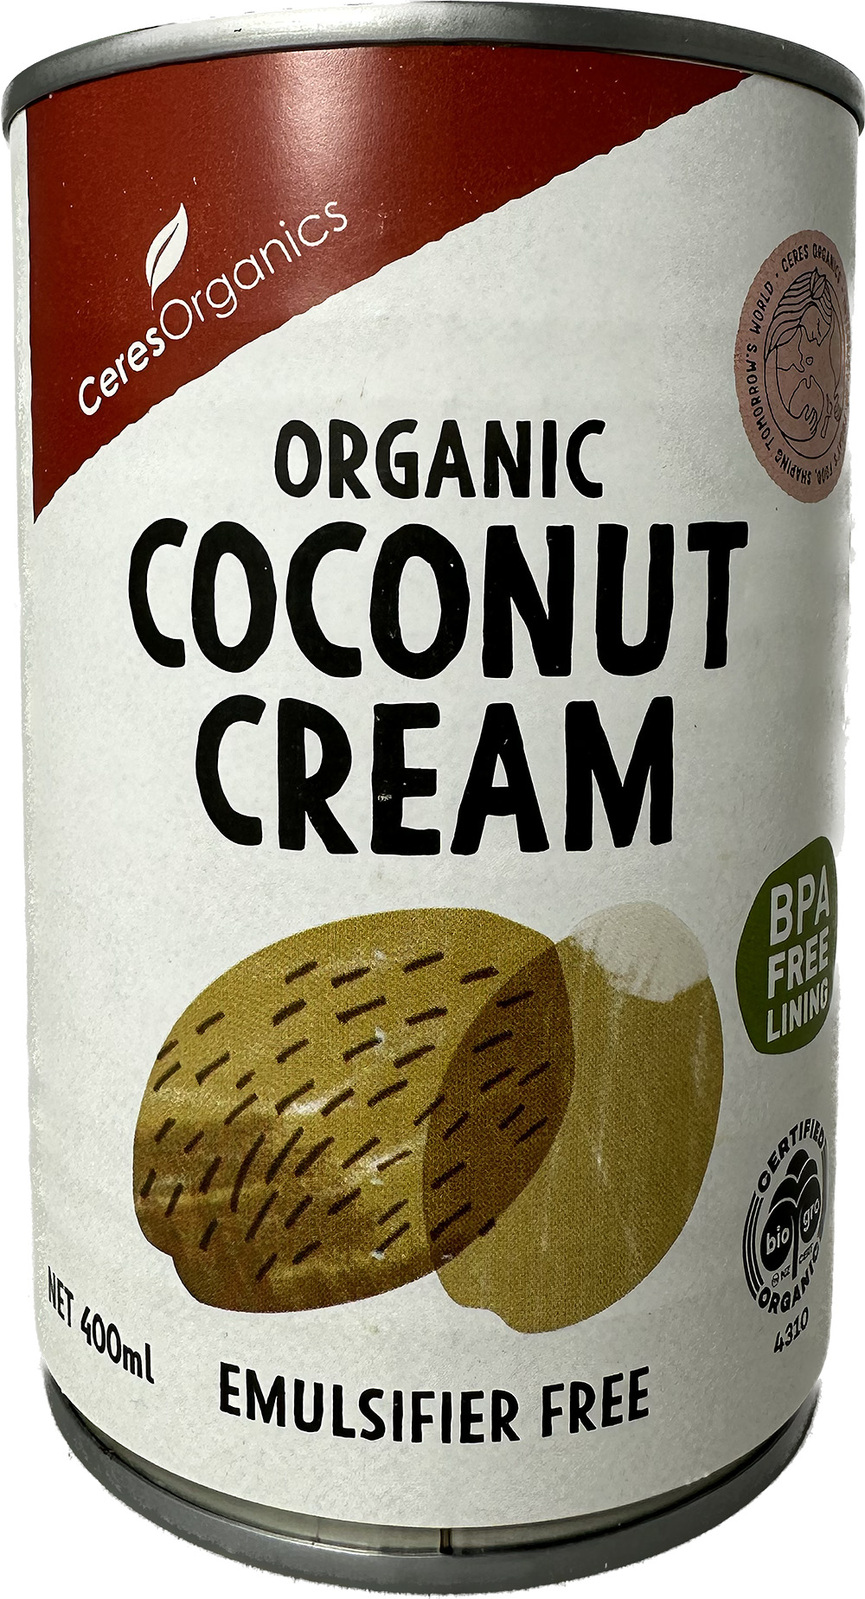 Organic Coconut Cream 400ml